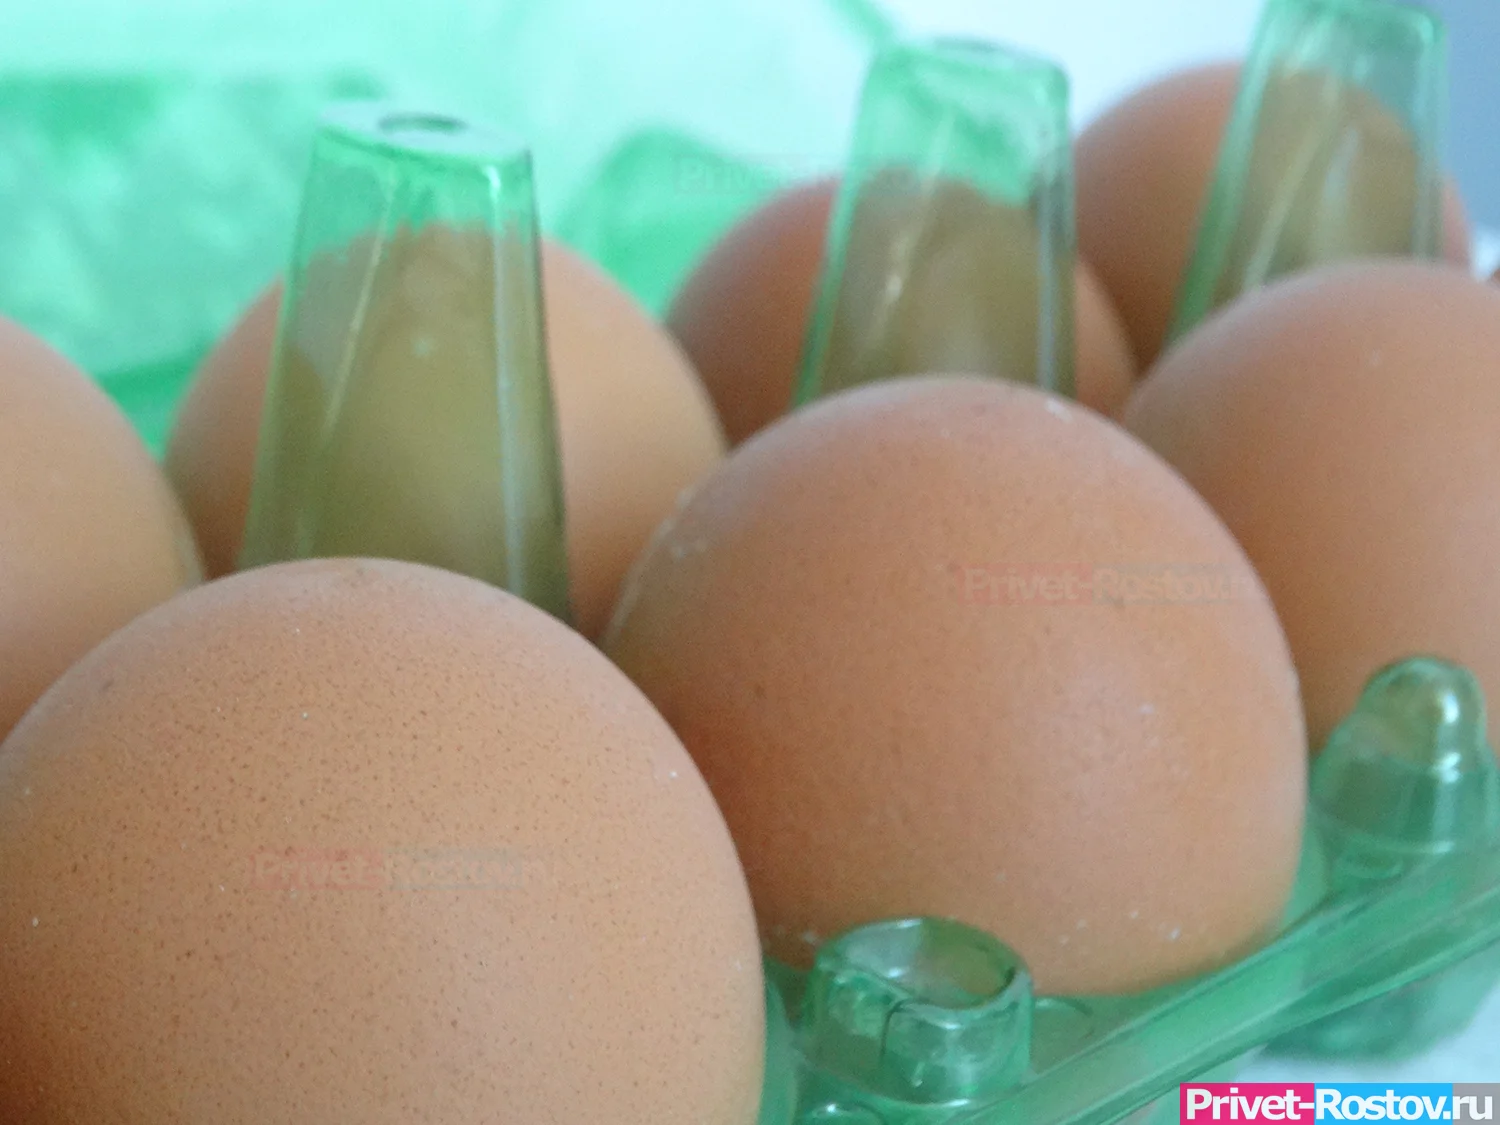 Настоящие яйца стали заменять на искусственные. Эксперты выяснили опасность такой продукции